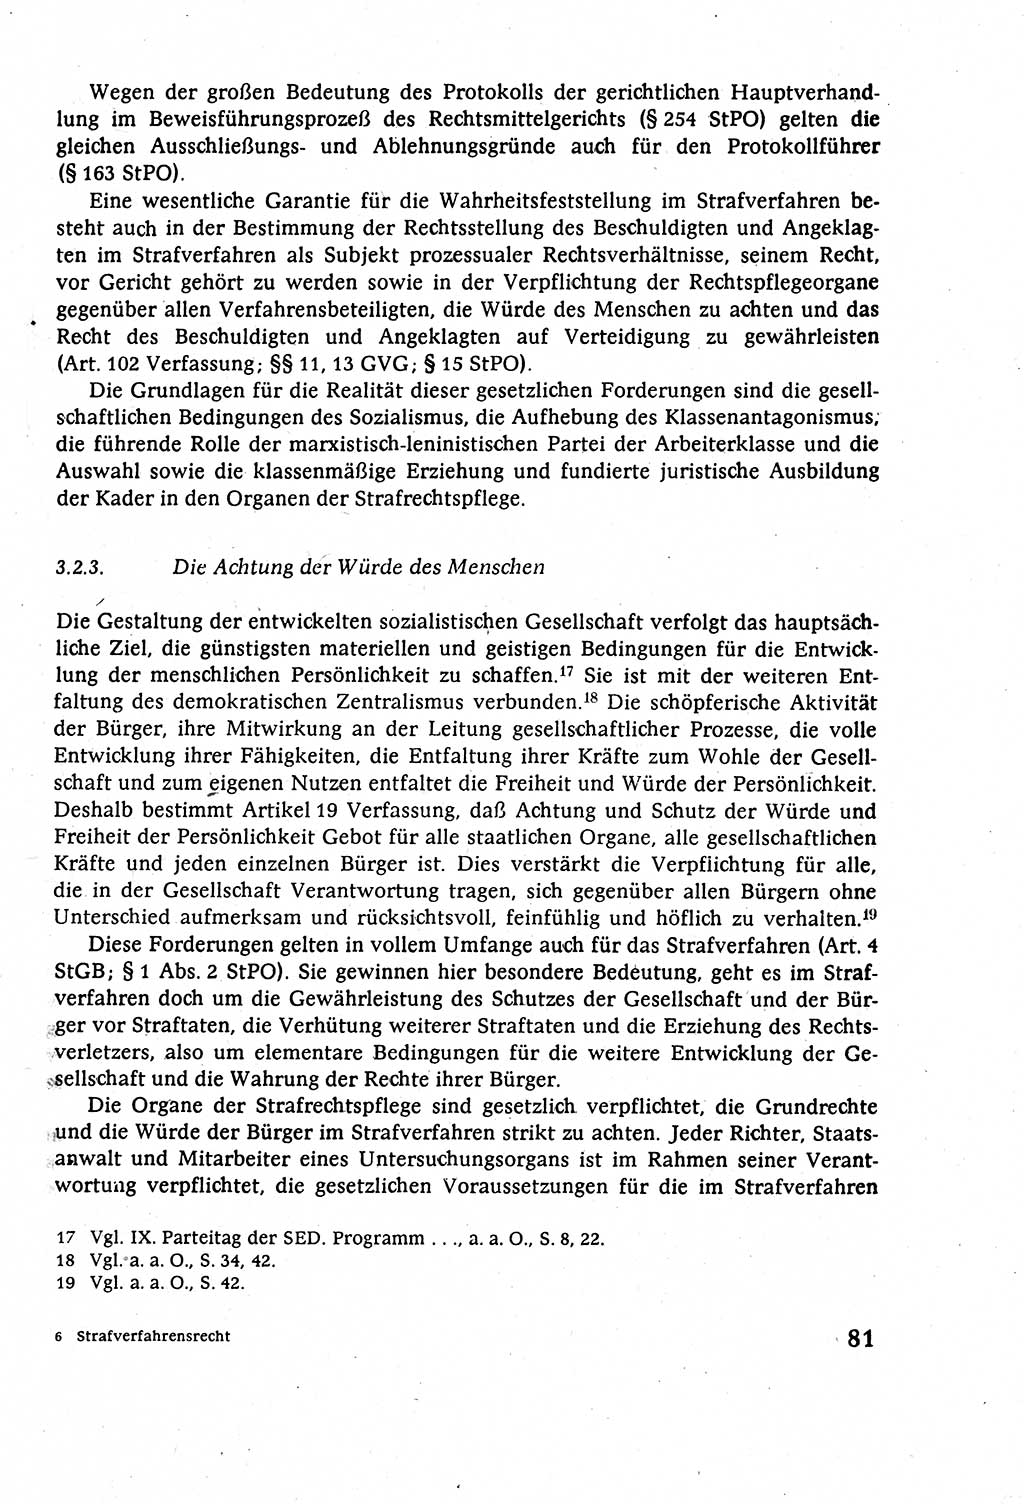 Strafverfahrensrecht [Deutsche Demokratische Republik (DDR)], Lehrbuch 1977, Seite 81 (Strafverf.-R. DDR Lb. 1977, S. 81)